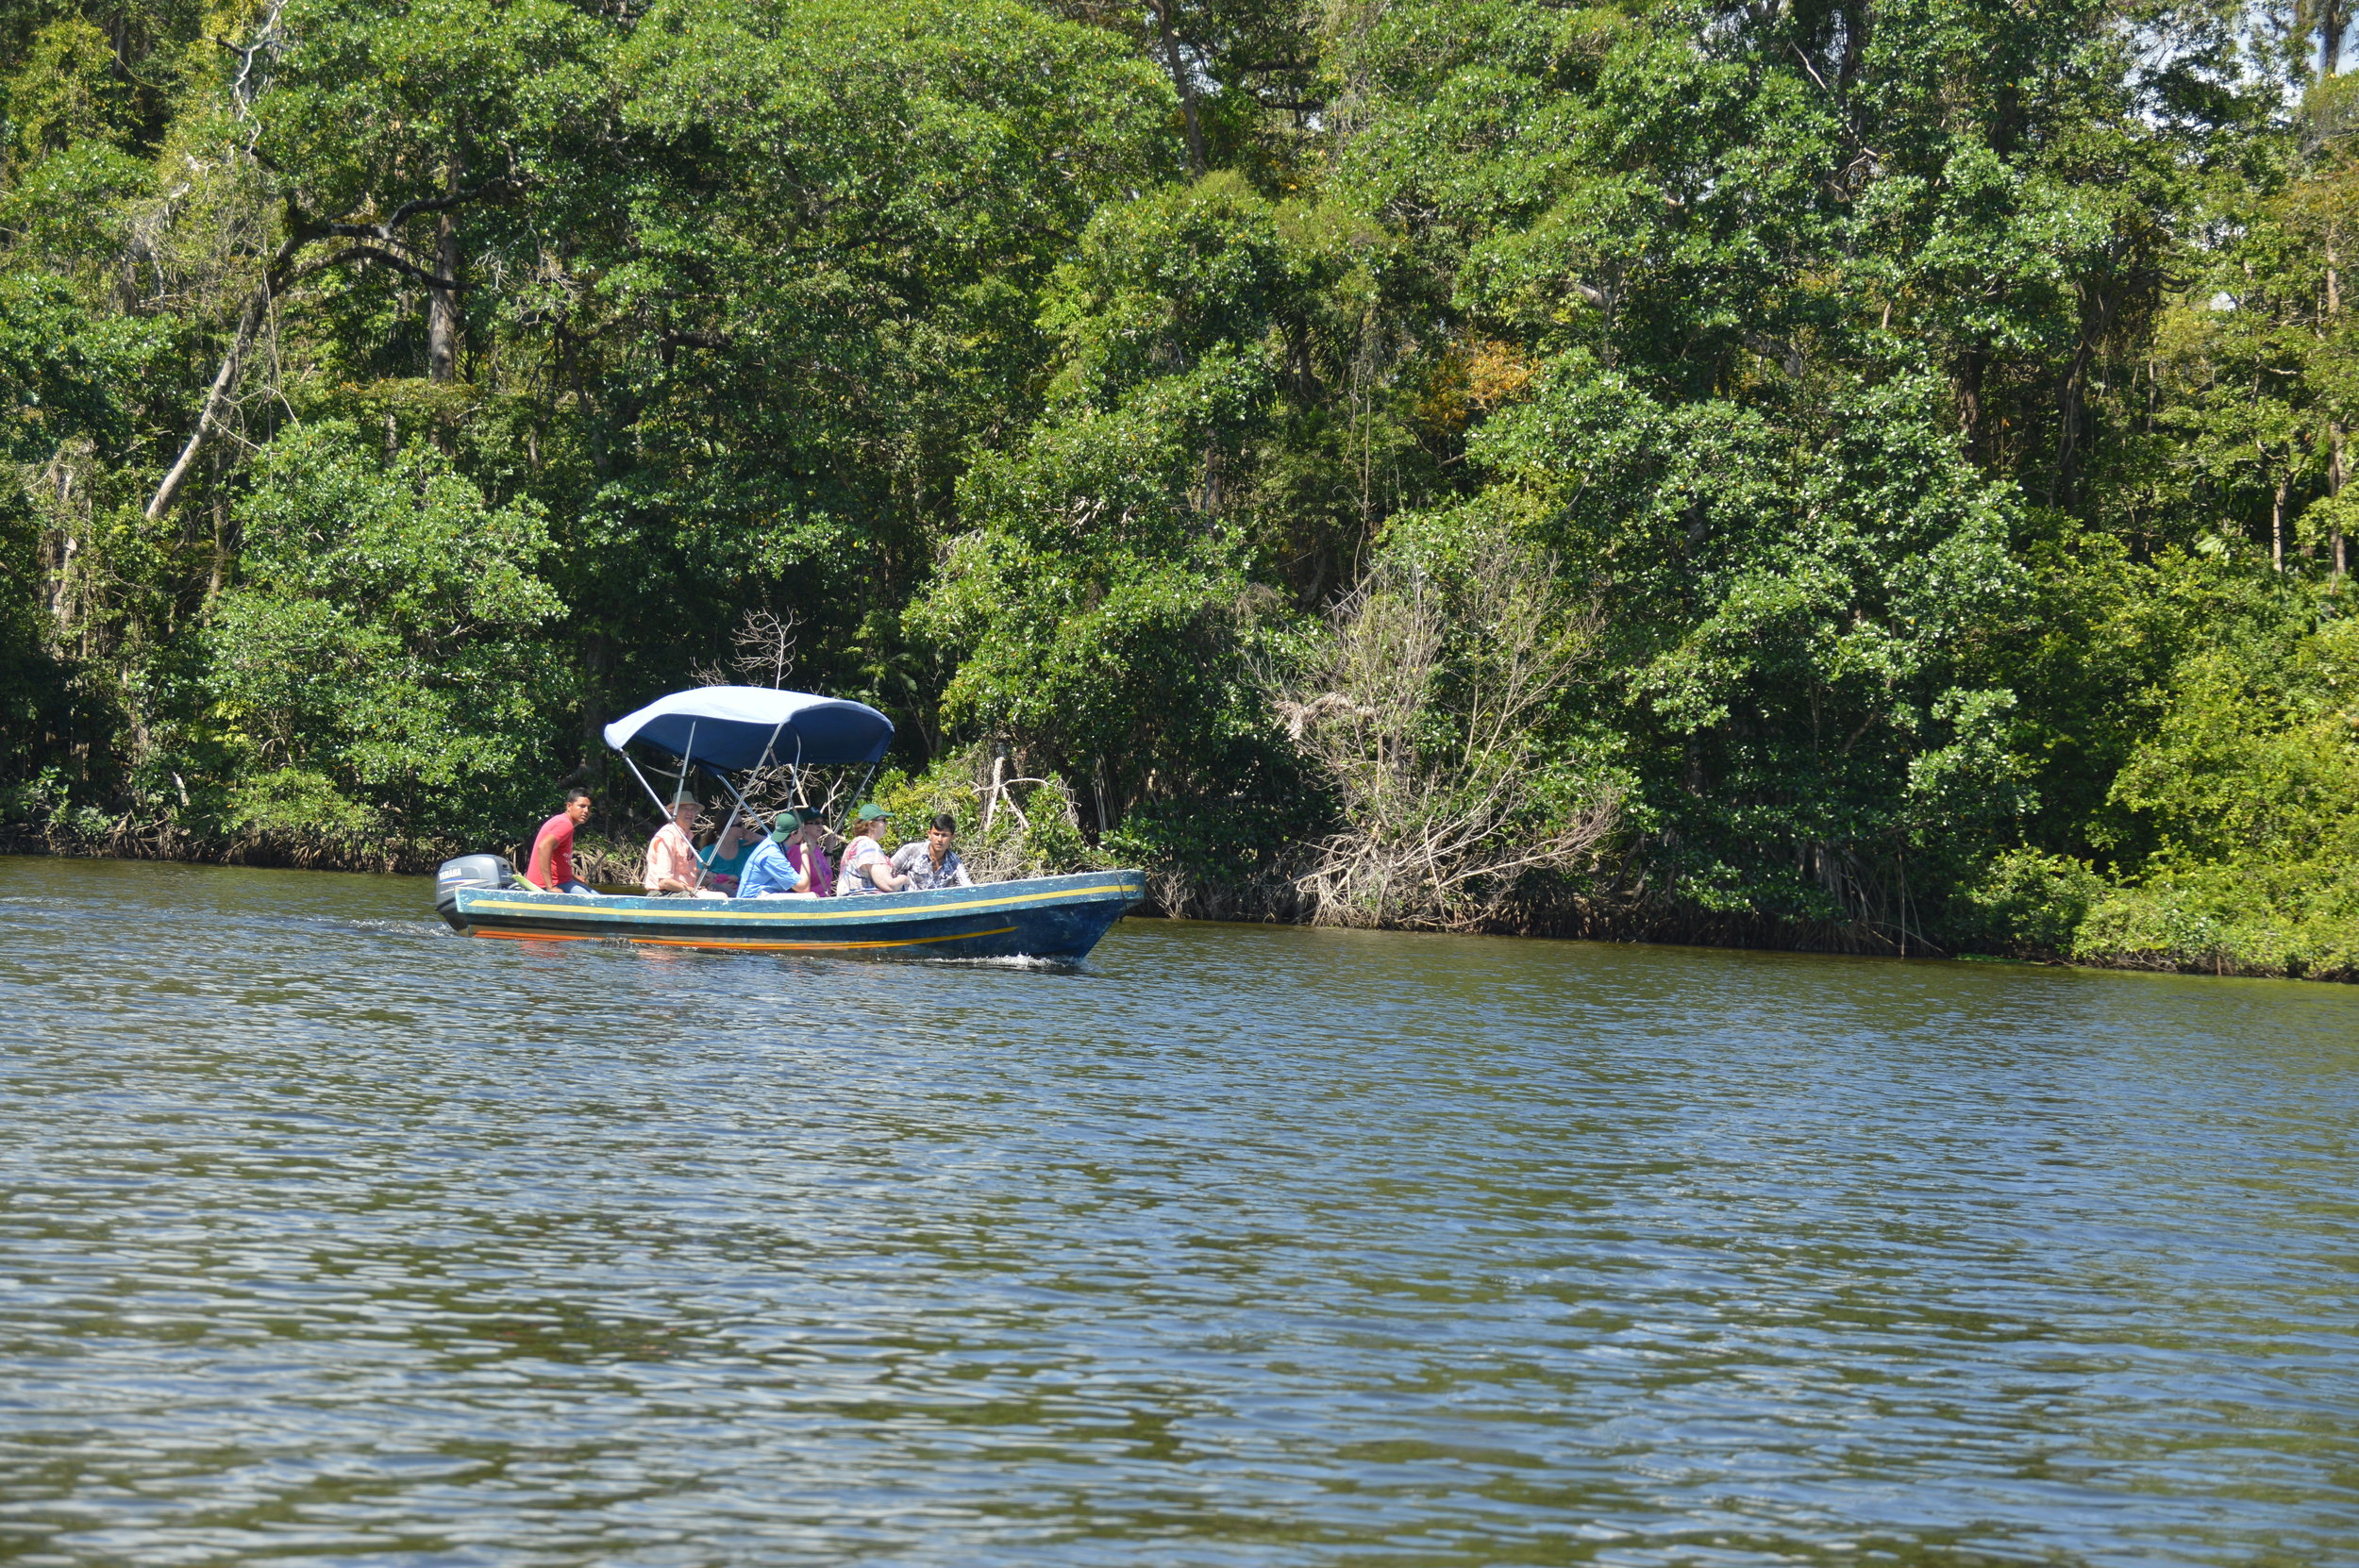 Boat trip on Rio Salado